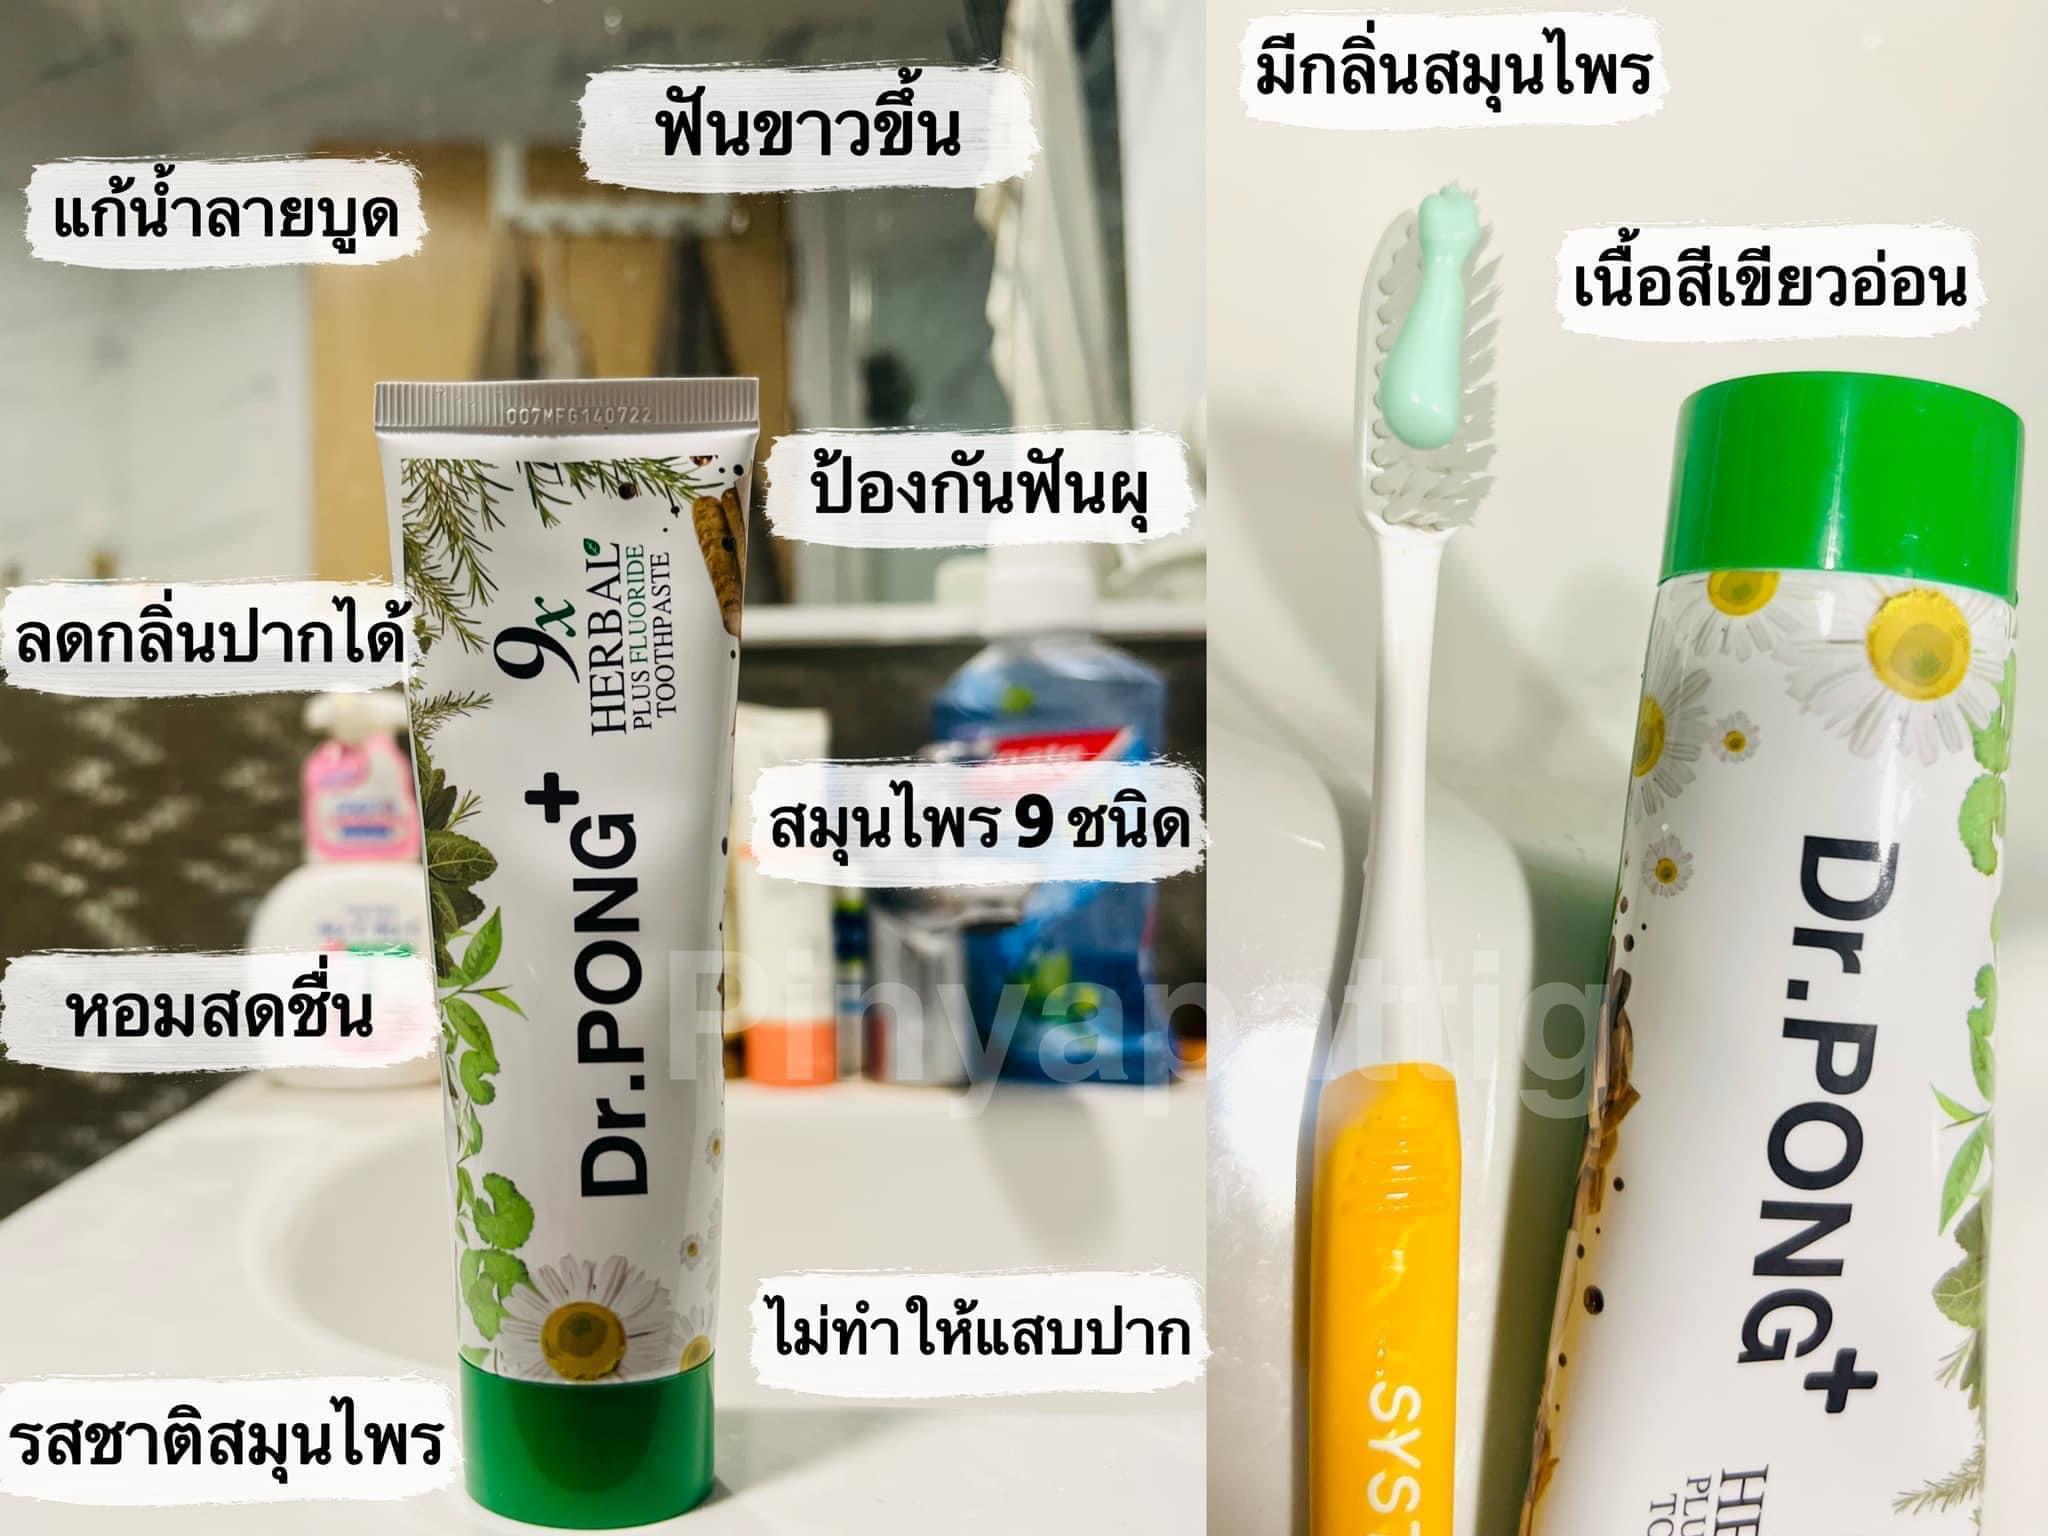 ภาพหน้าปก ยาสีฟัน Dr.pong ฟัวขาว จบปัญหาคราบฟัน ที่:0